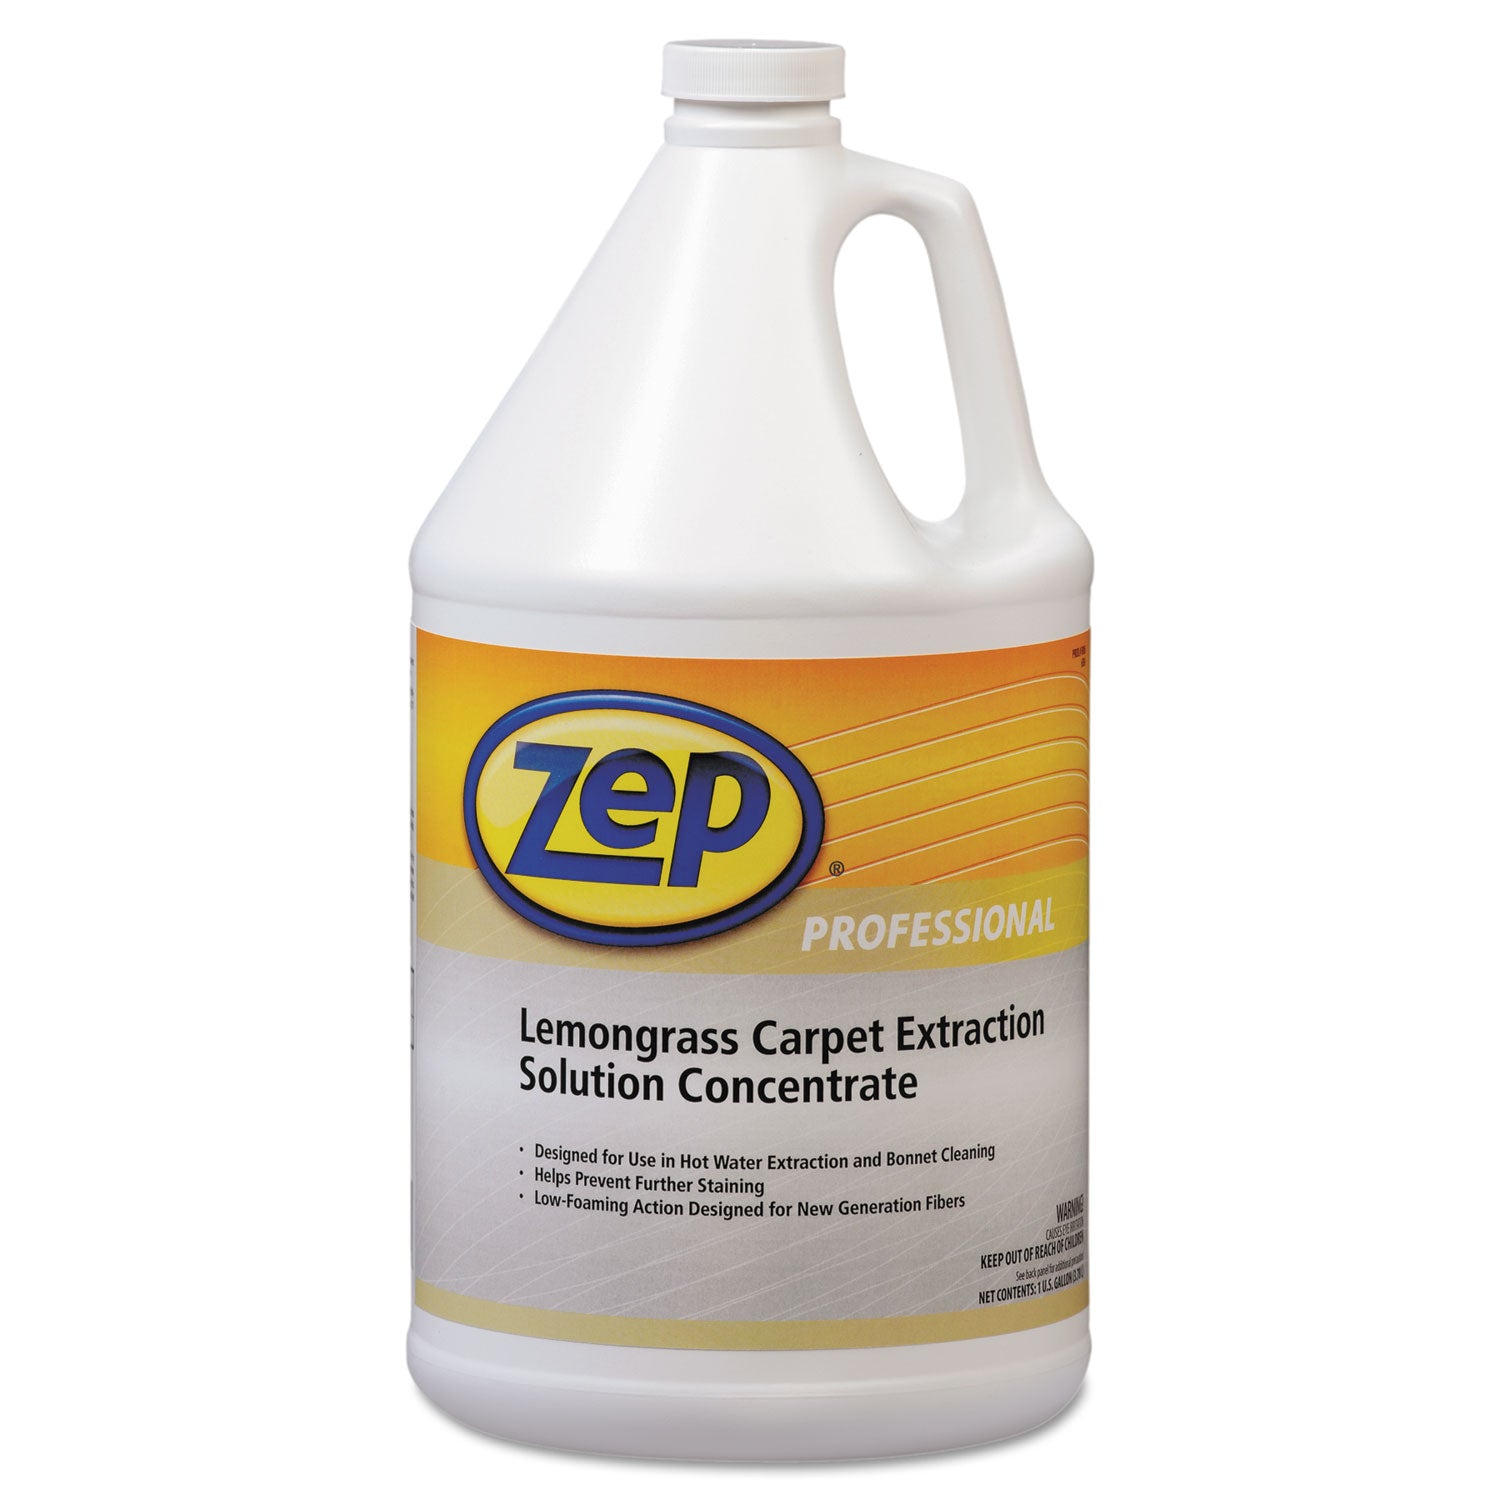 carpet-extraction-cleaner-lemongrass-1gal-bottle_zpp1041398ea - 1